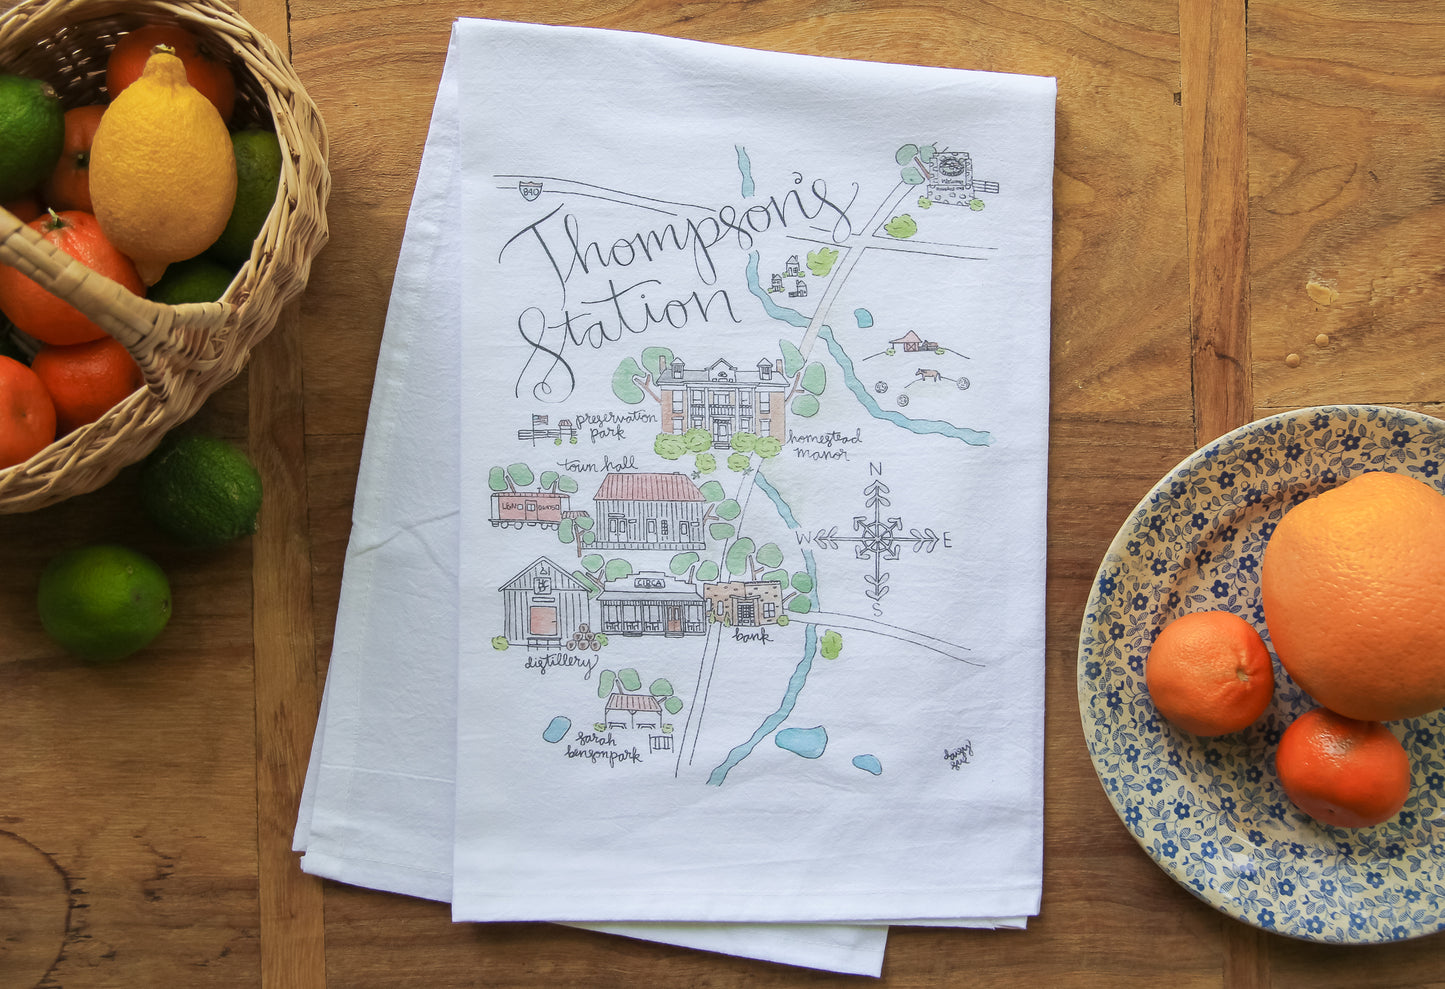 Thompson's Station, TN Tea Towel